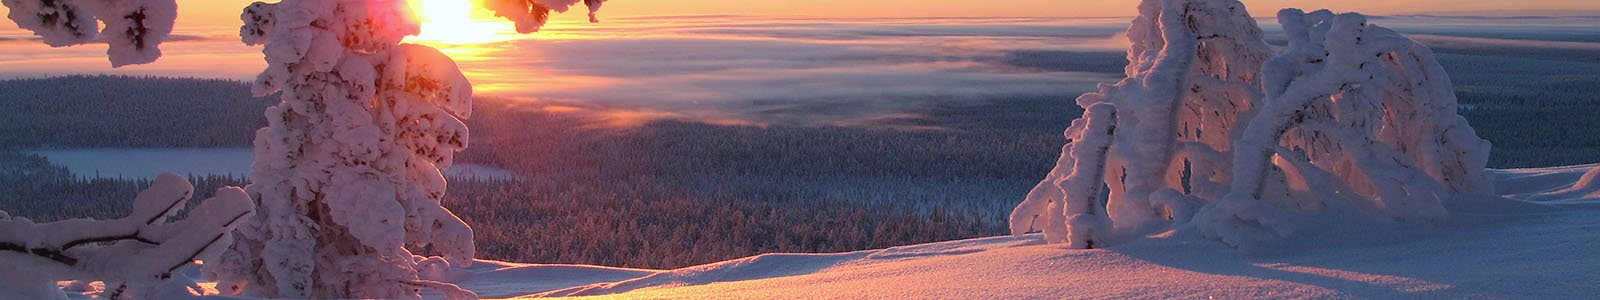 Meld je aan voor de Online inspiratieavond Lapland op 30 maart